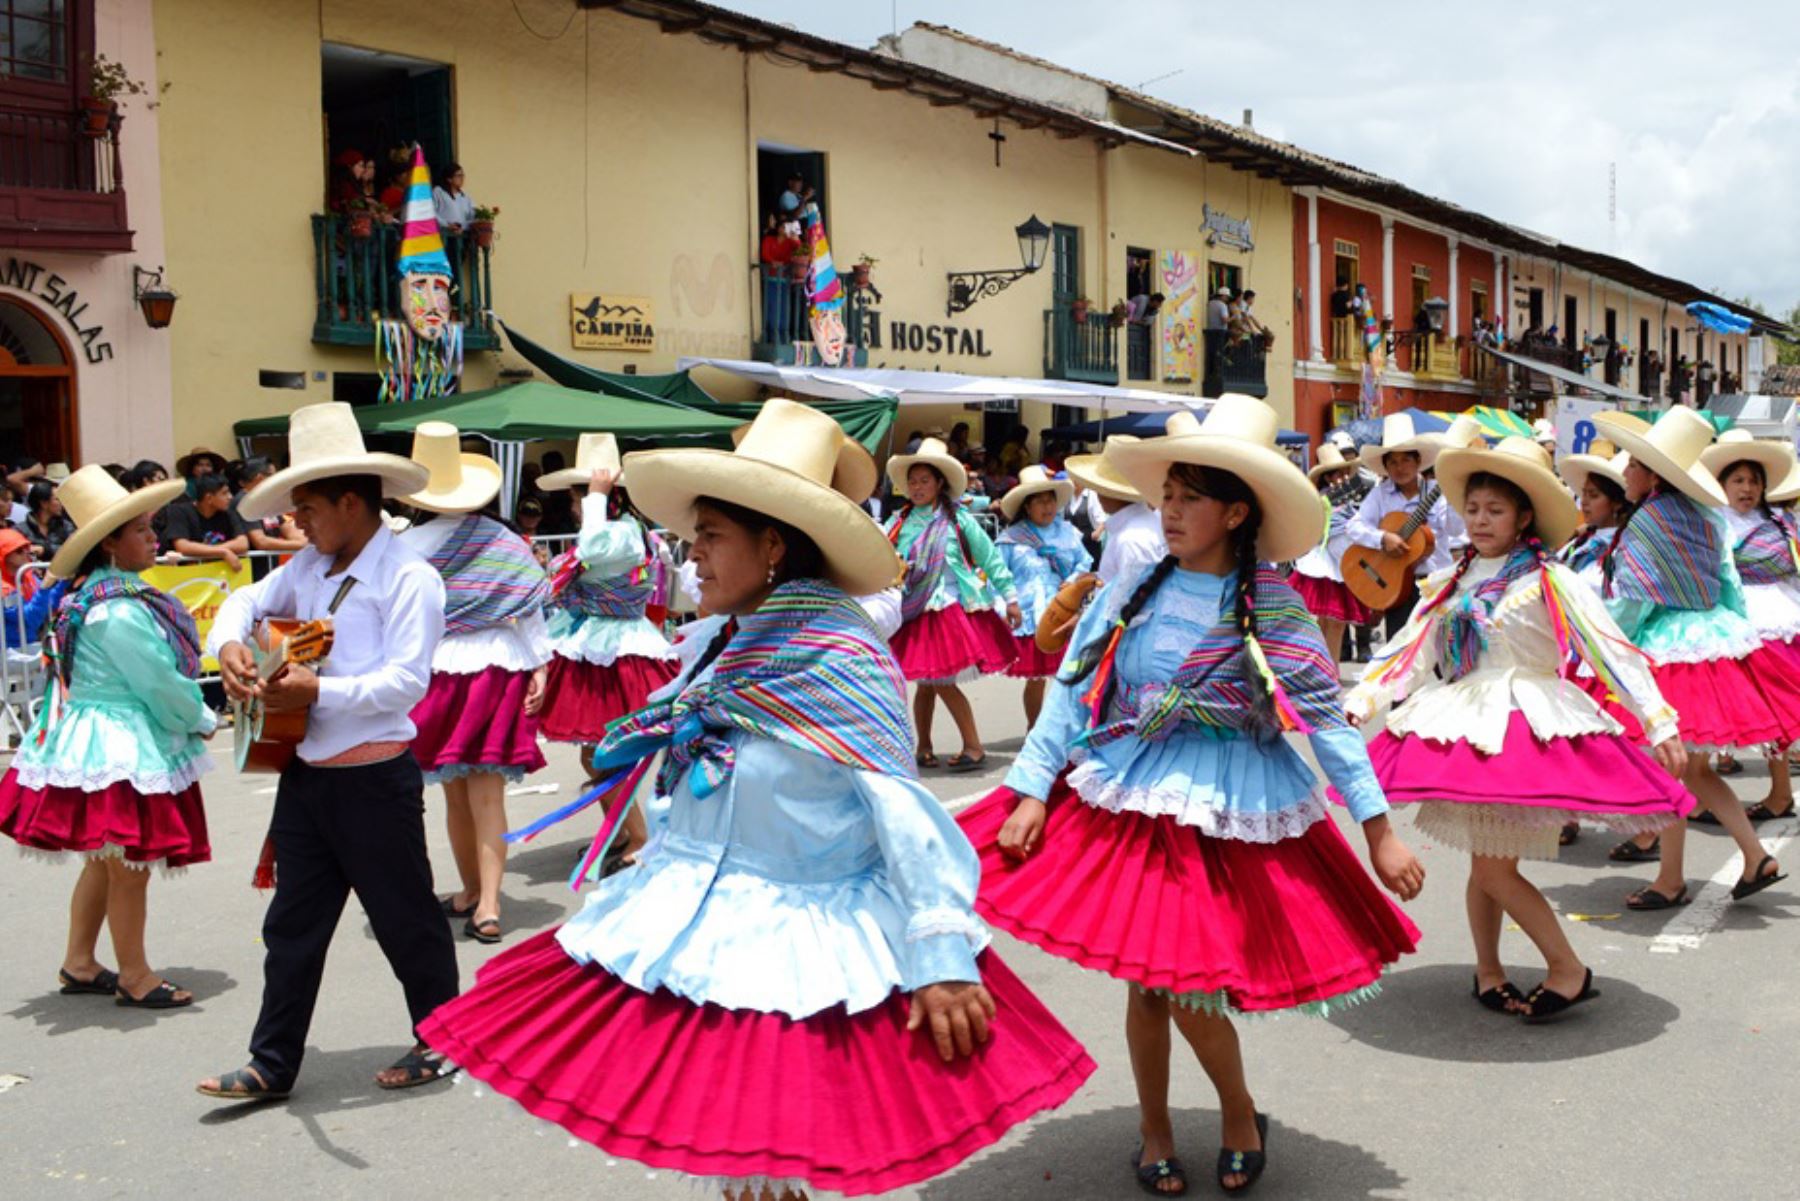 Esta estampa festiva del tradicional Carnaval Cajamarquino no se vivirá el 2021. El coronavirus obligó al comité organizador a suspender actividades. ANDINA/archivo